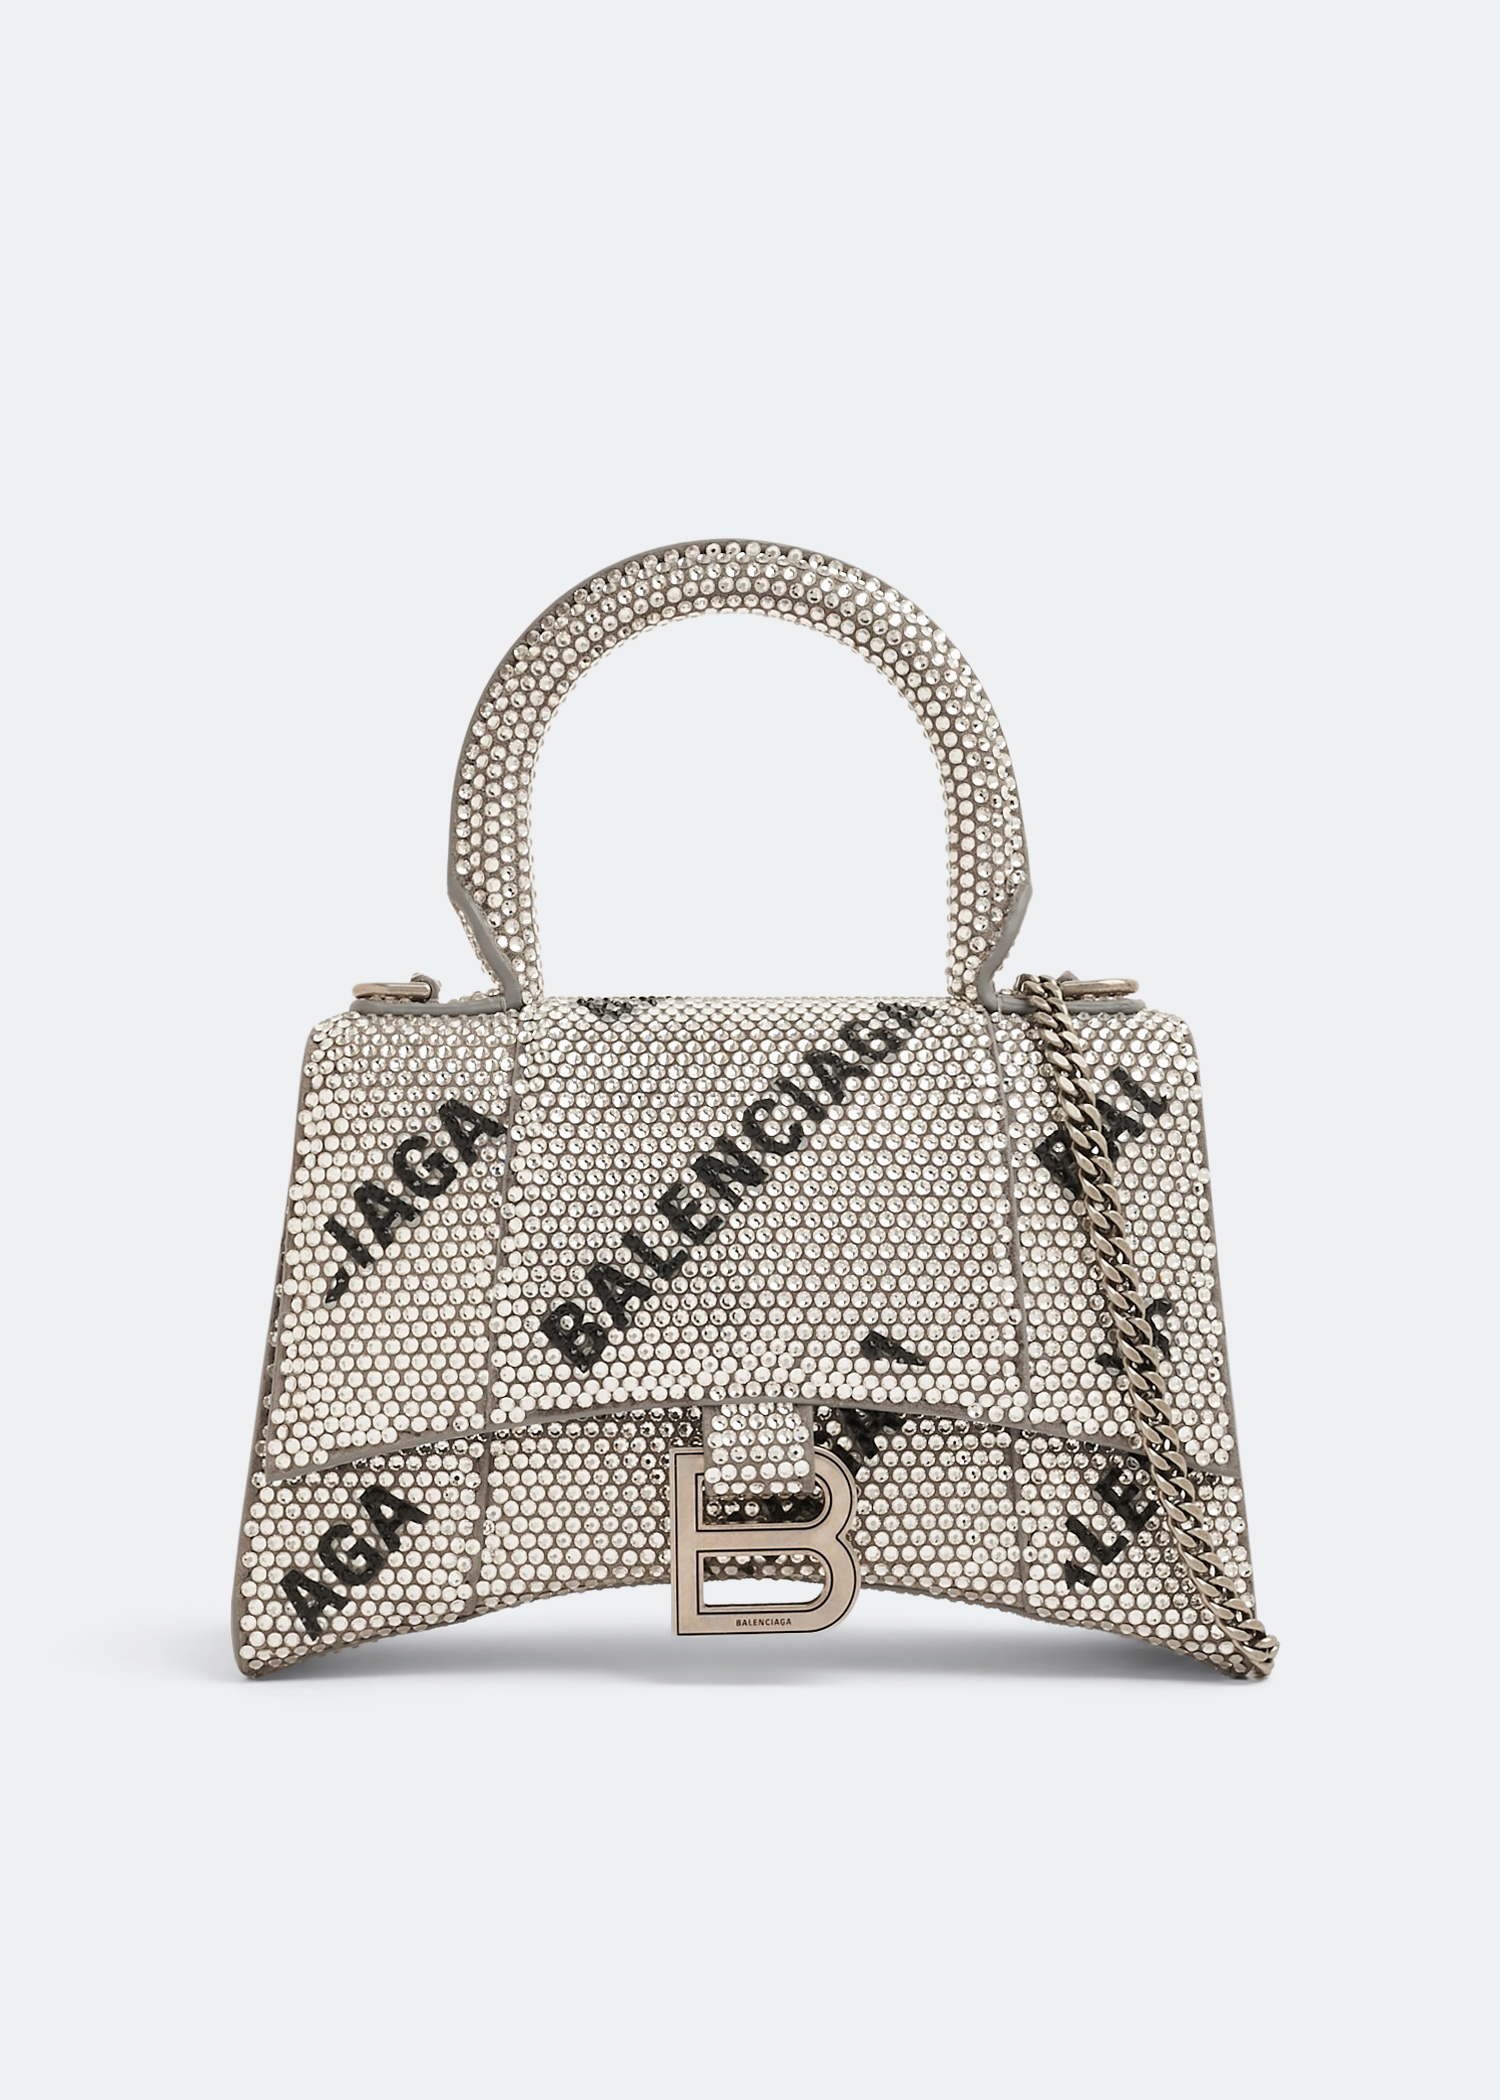 Balenciaga Hourglass XS chain bag for Women - Silver in KSA 